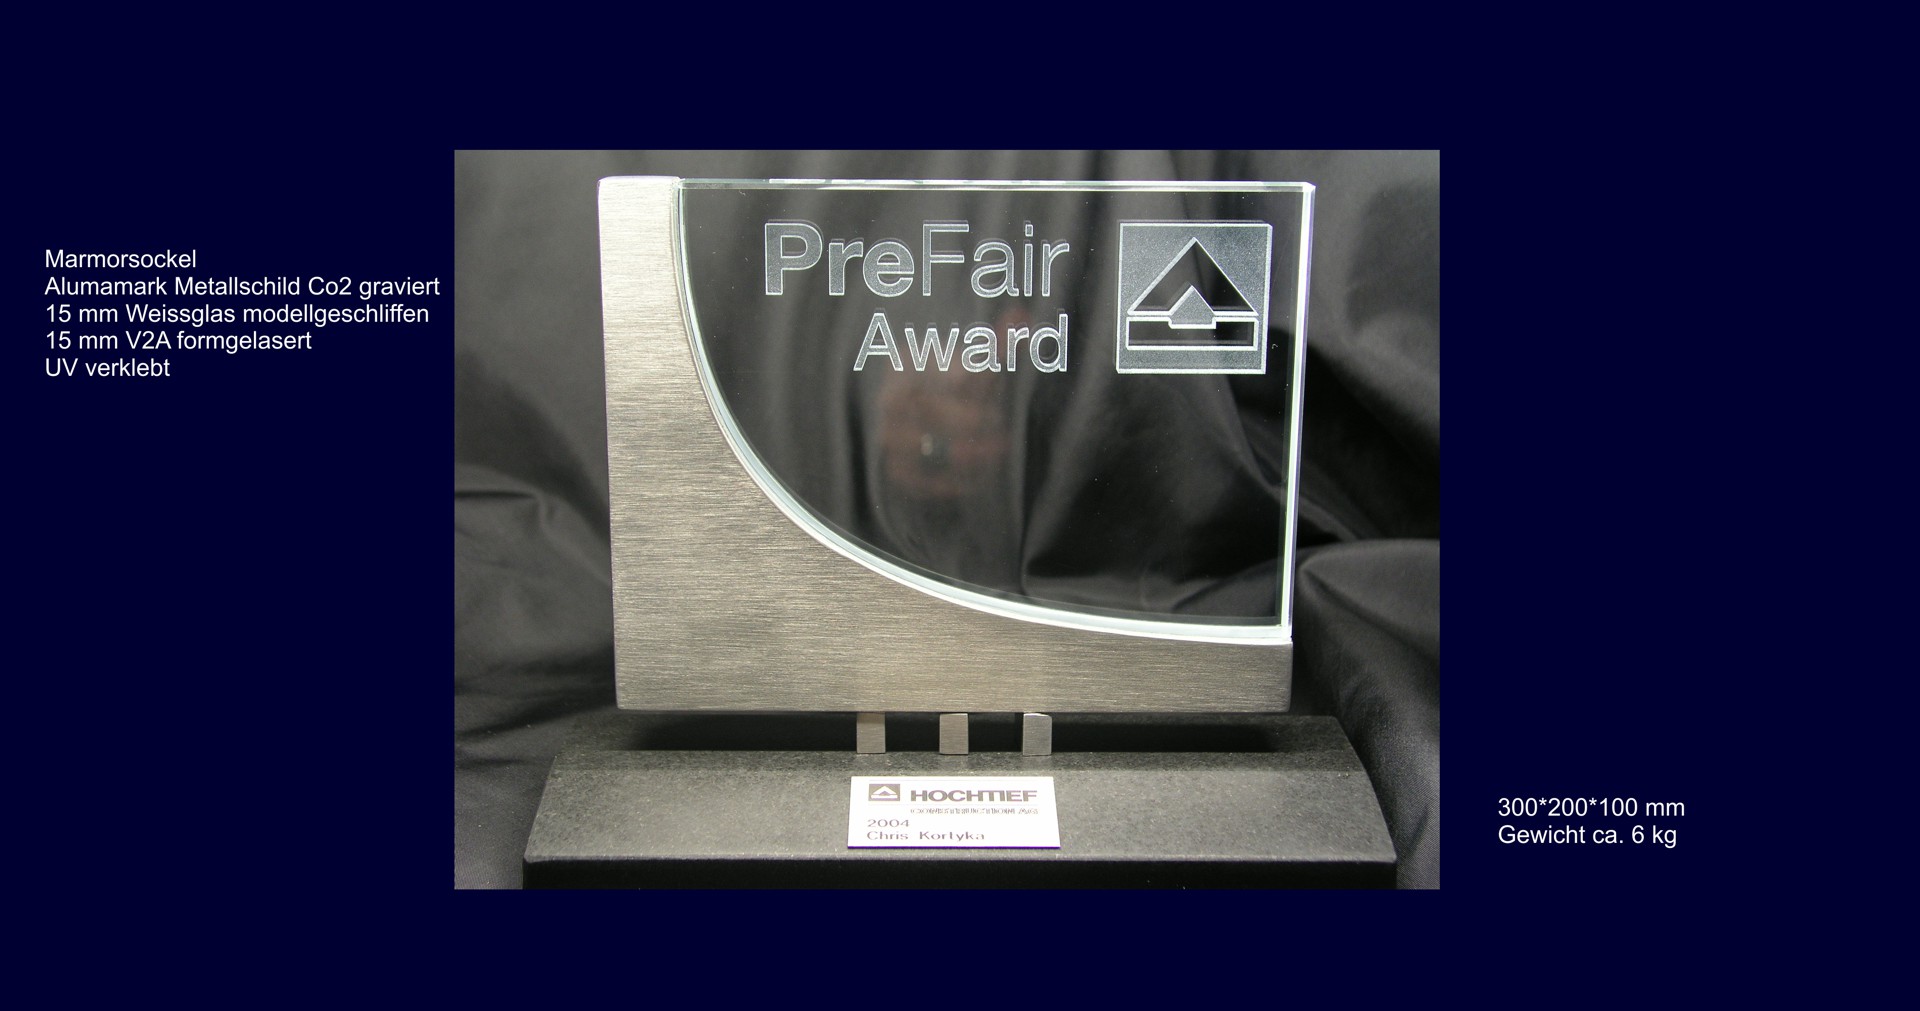 Prefair_Award_01